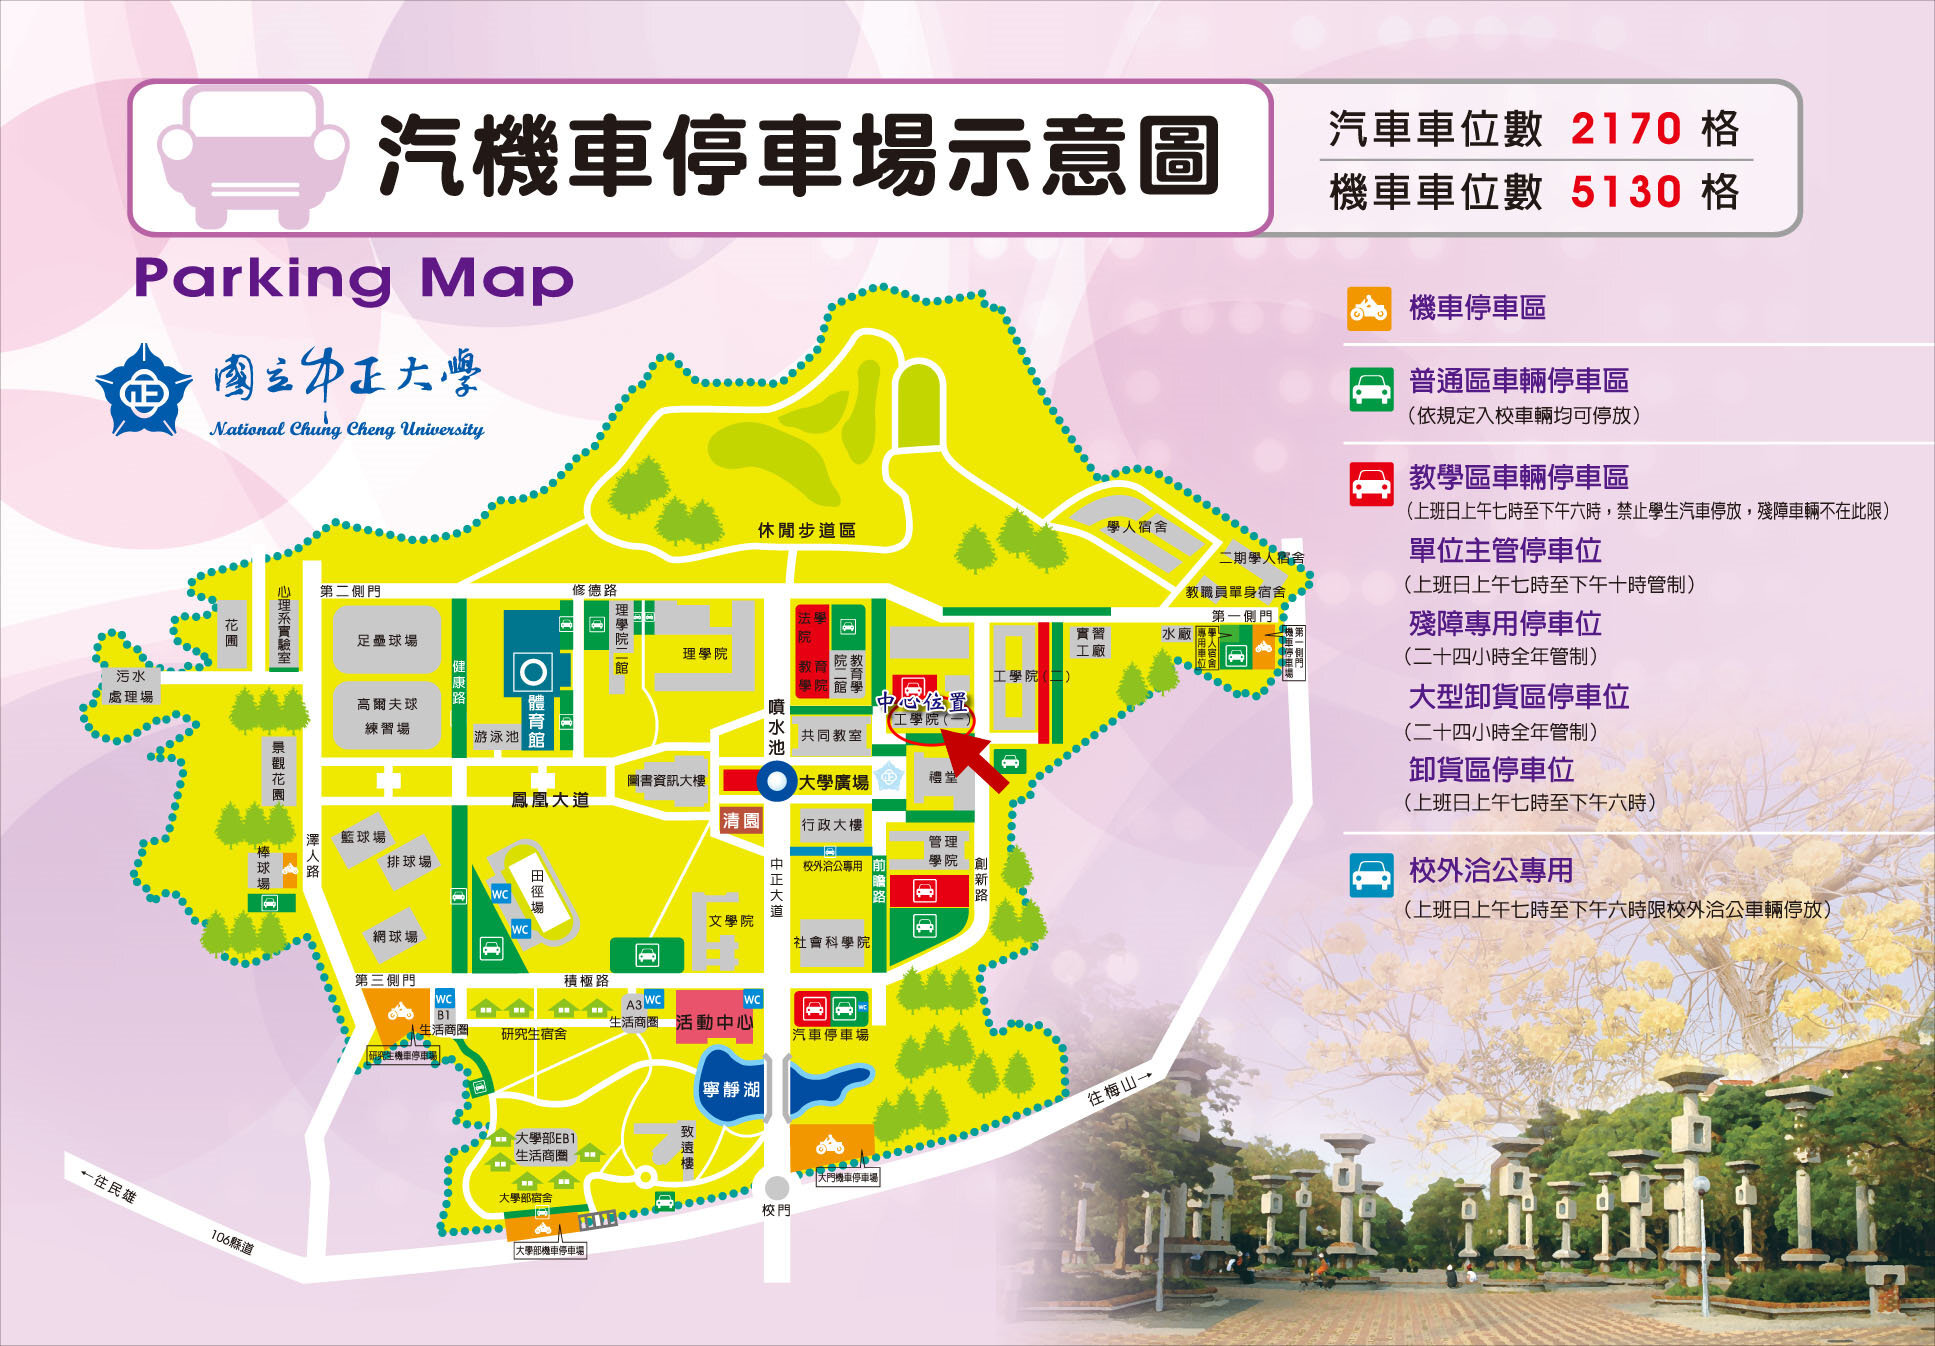 CCU Parking Lot Map